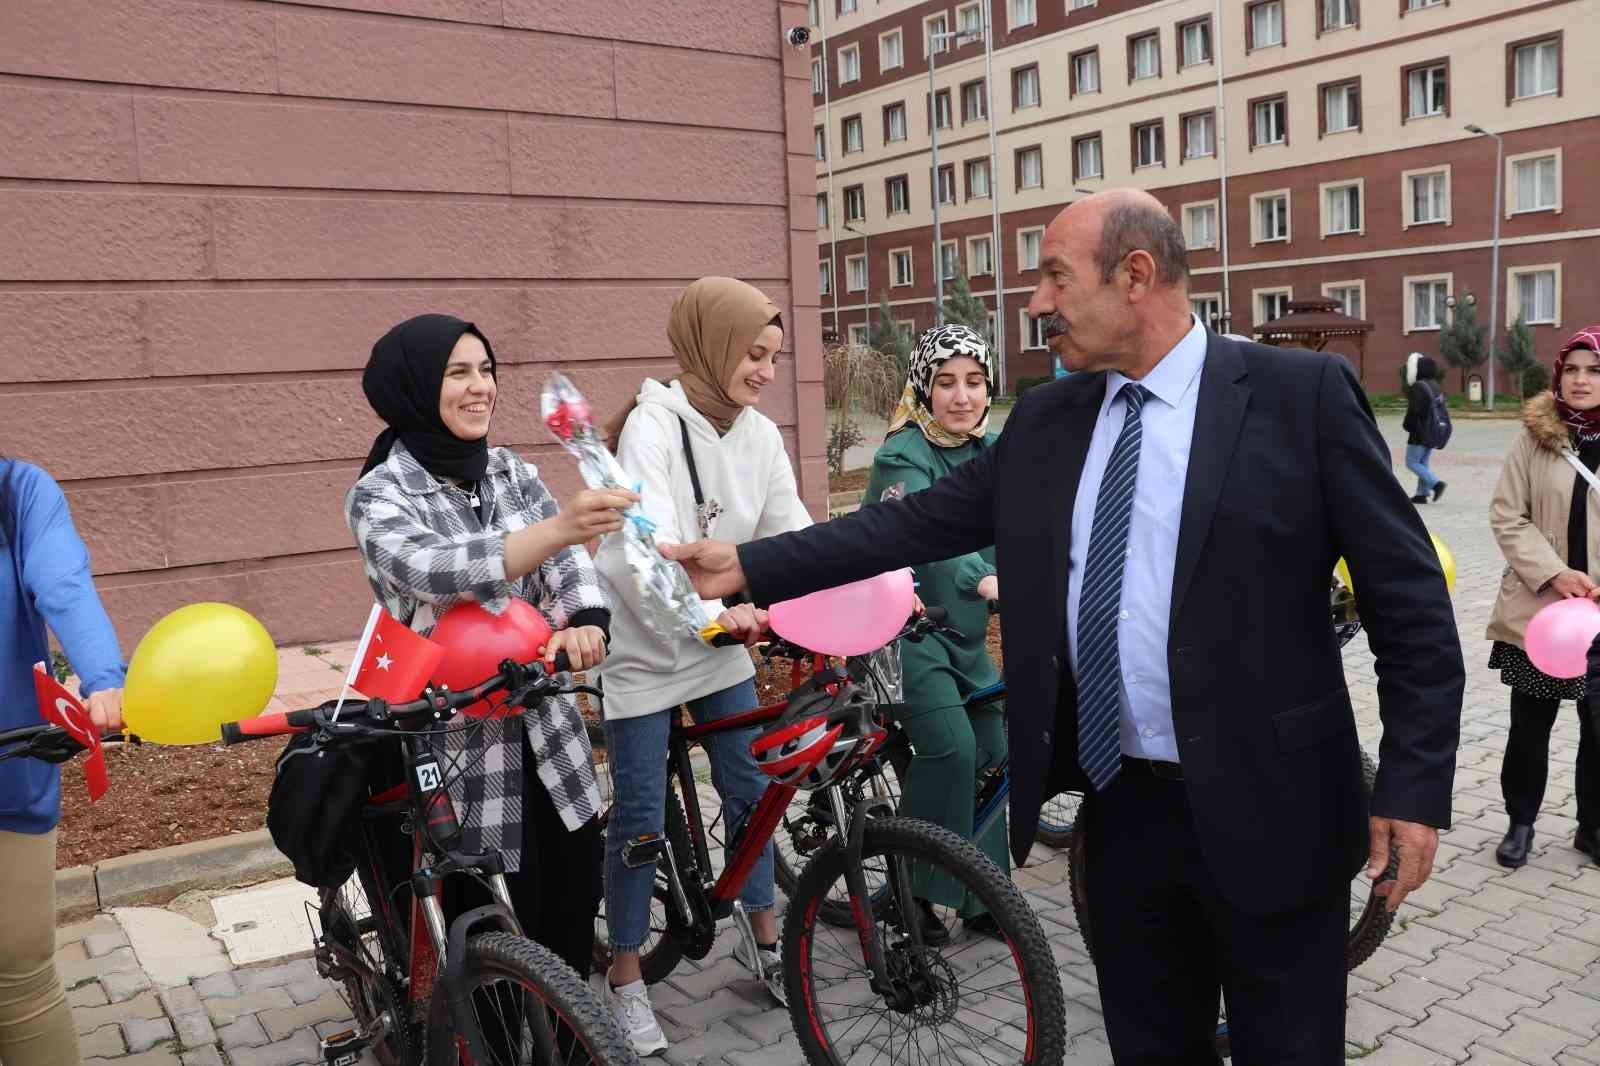 Siirt’te kadınlar için bisiklet turu gerçekleştirildi #siirt